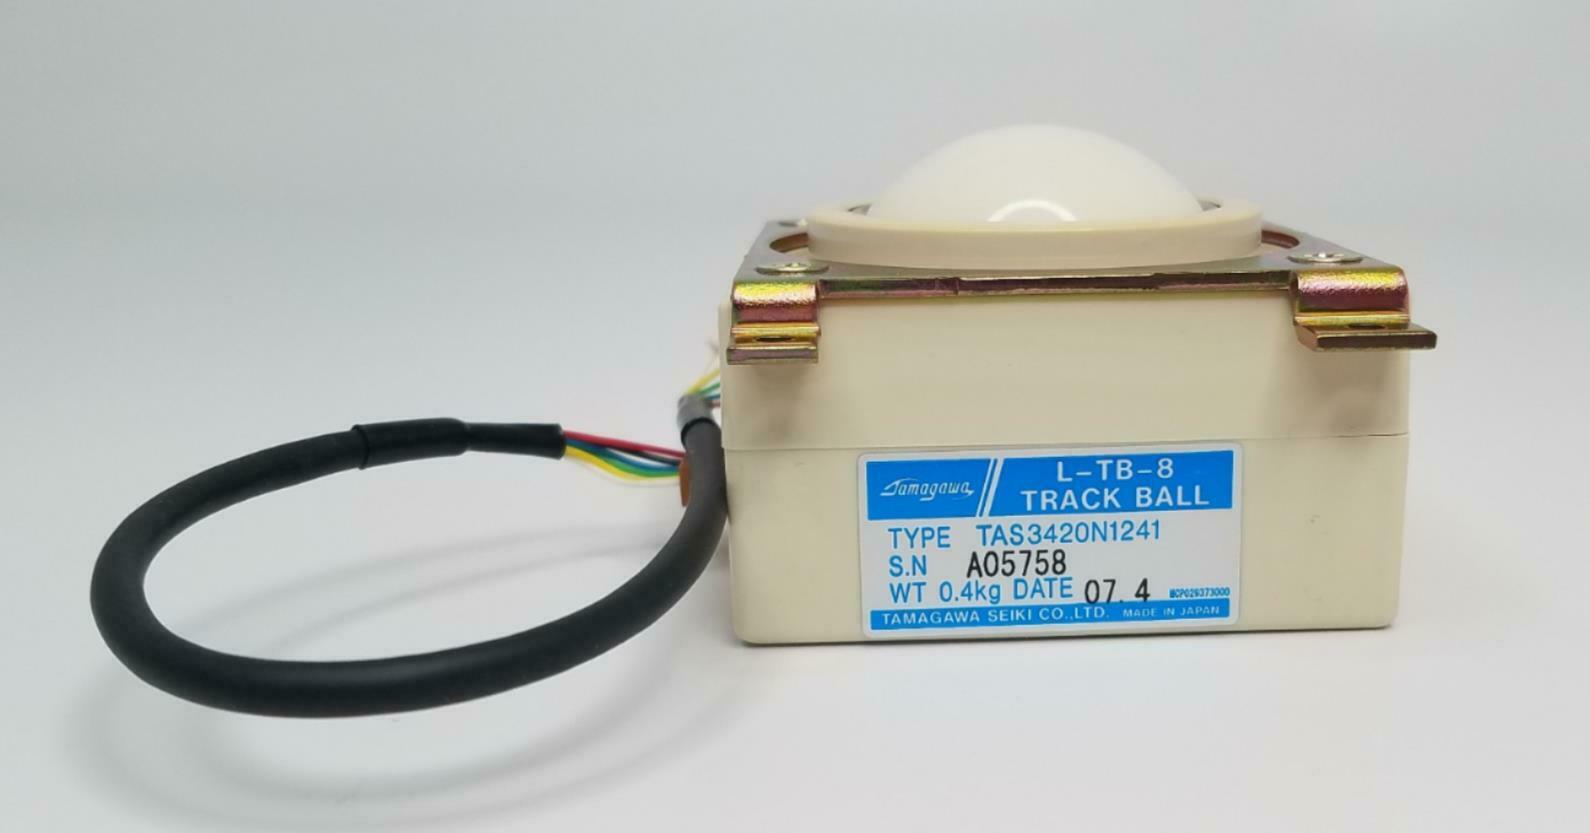 Aloka Ultrasound SSD-a5 L-TB-8 Track Ball TAS3420N1241